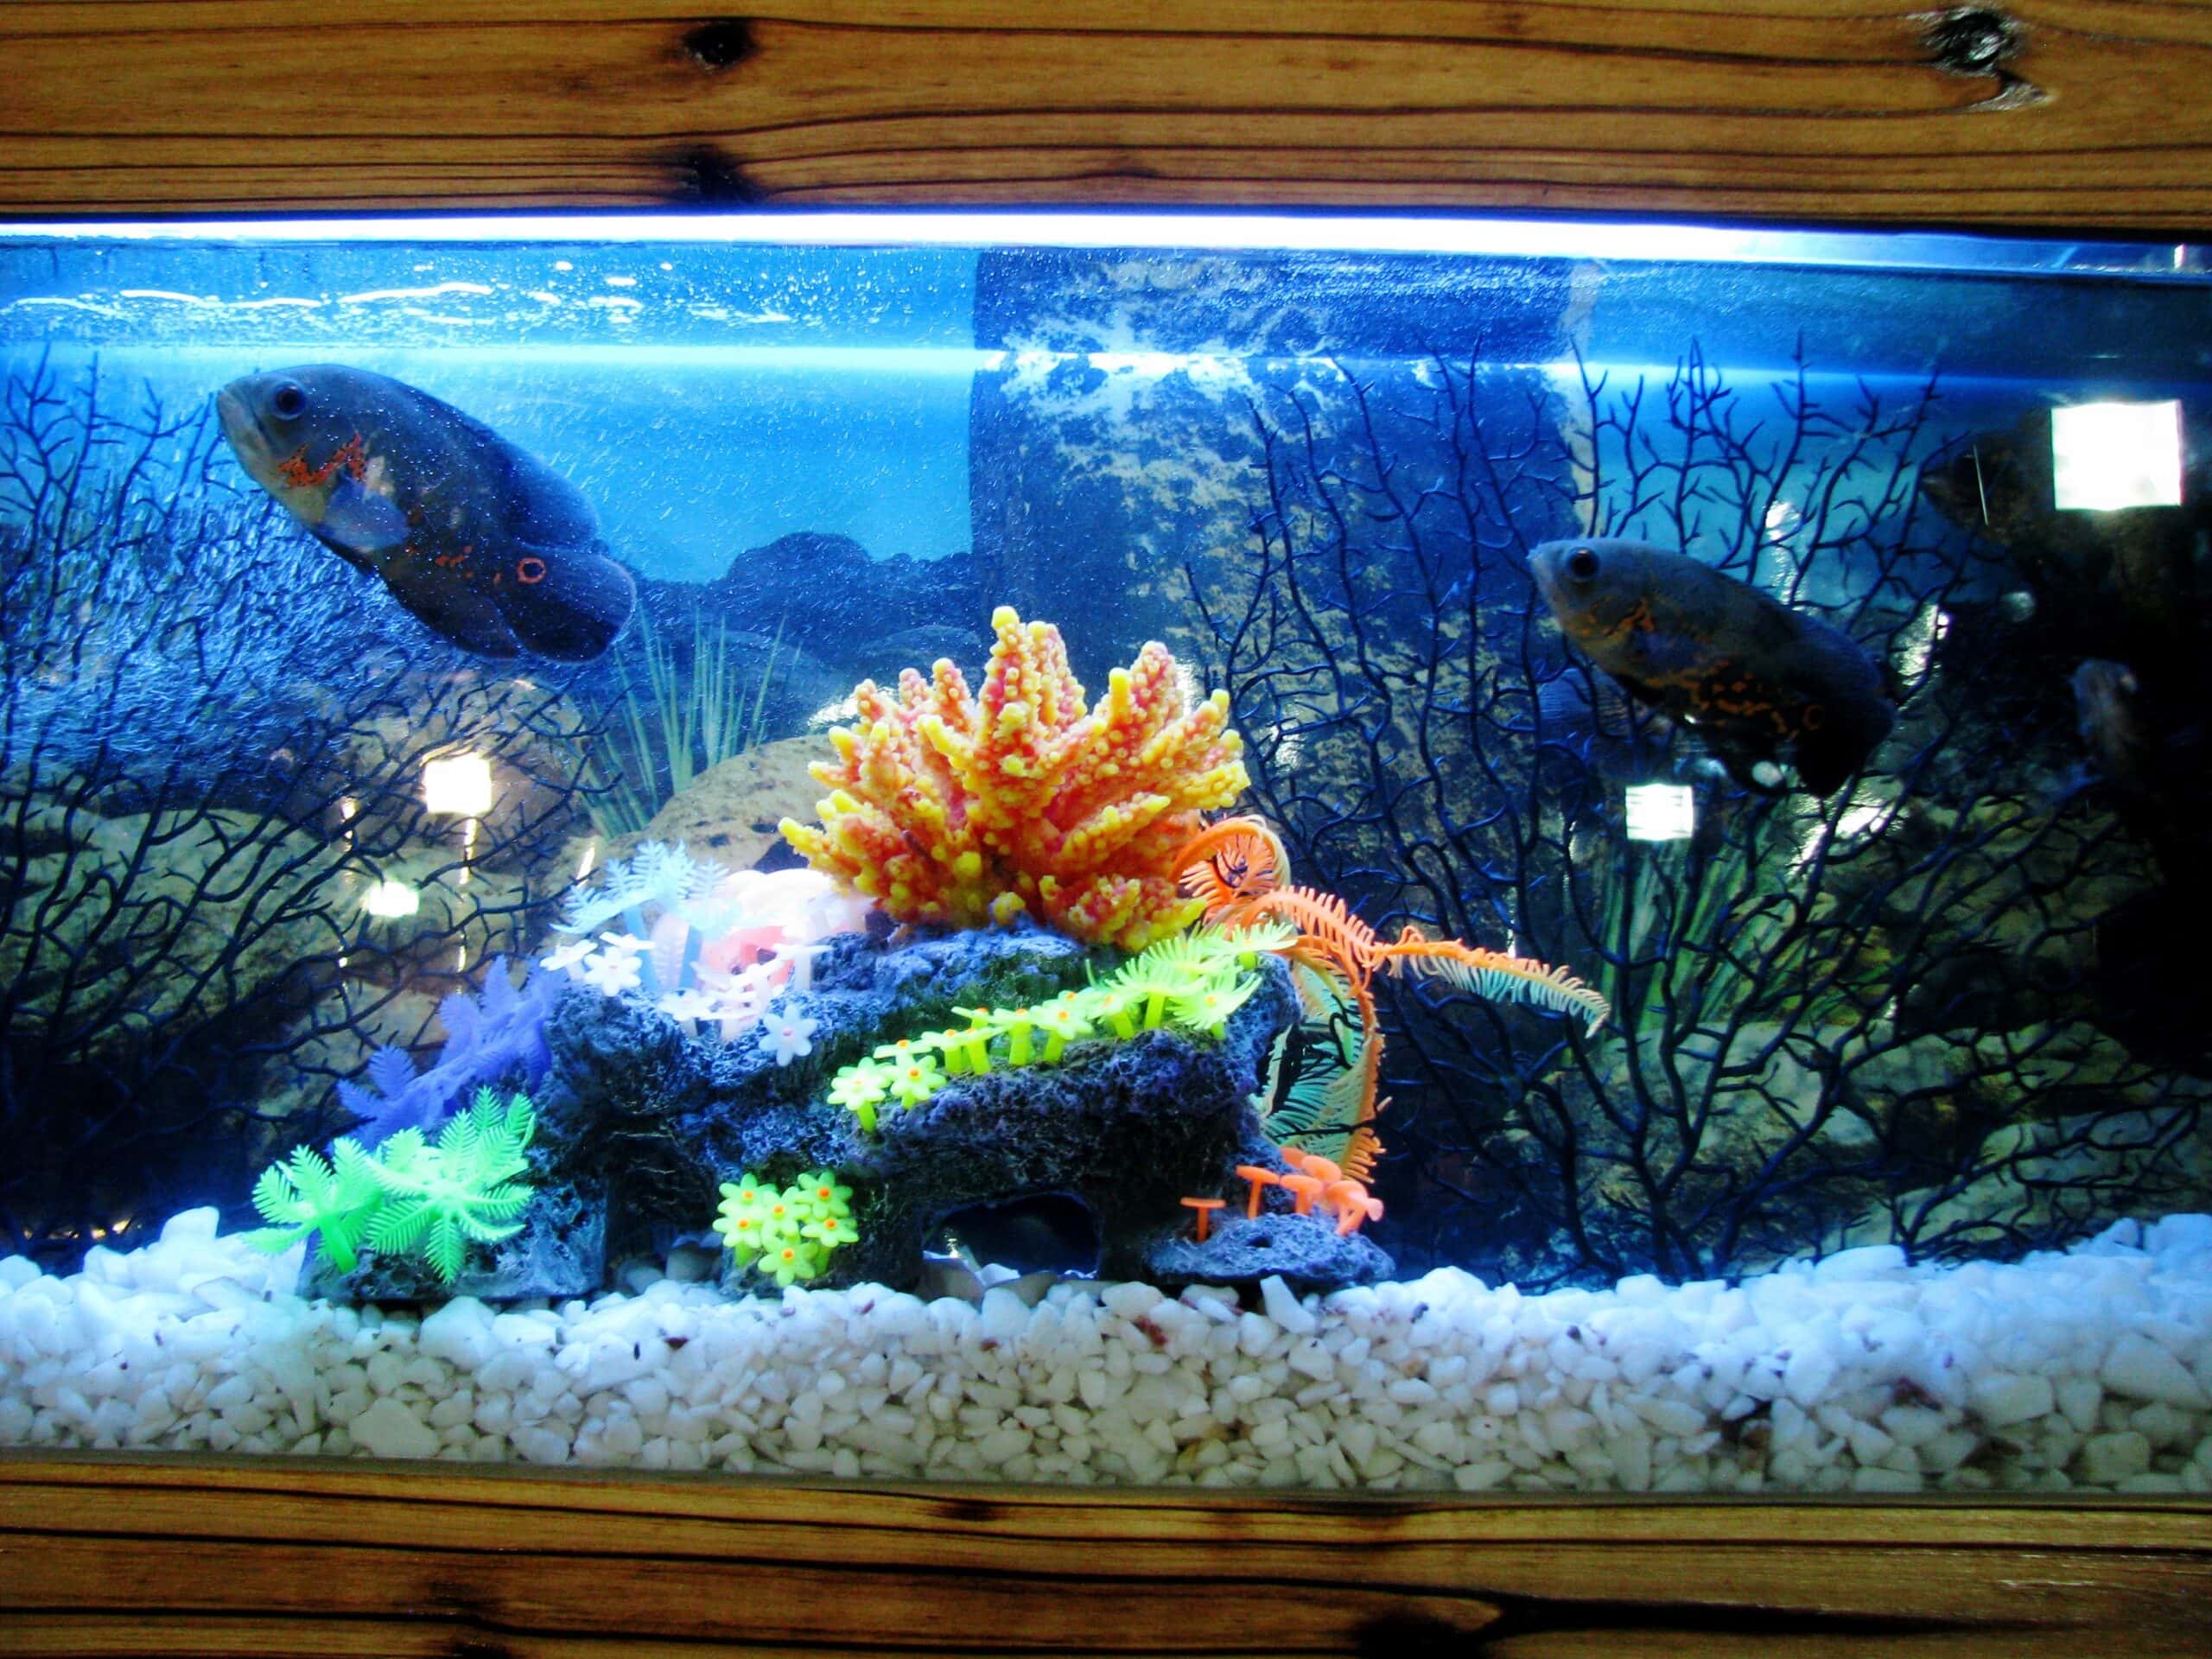 Home aquarium with background